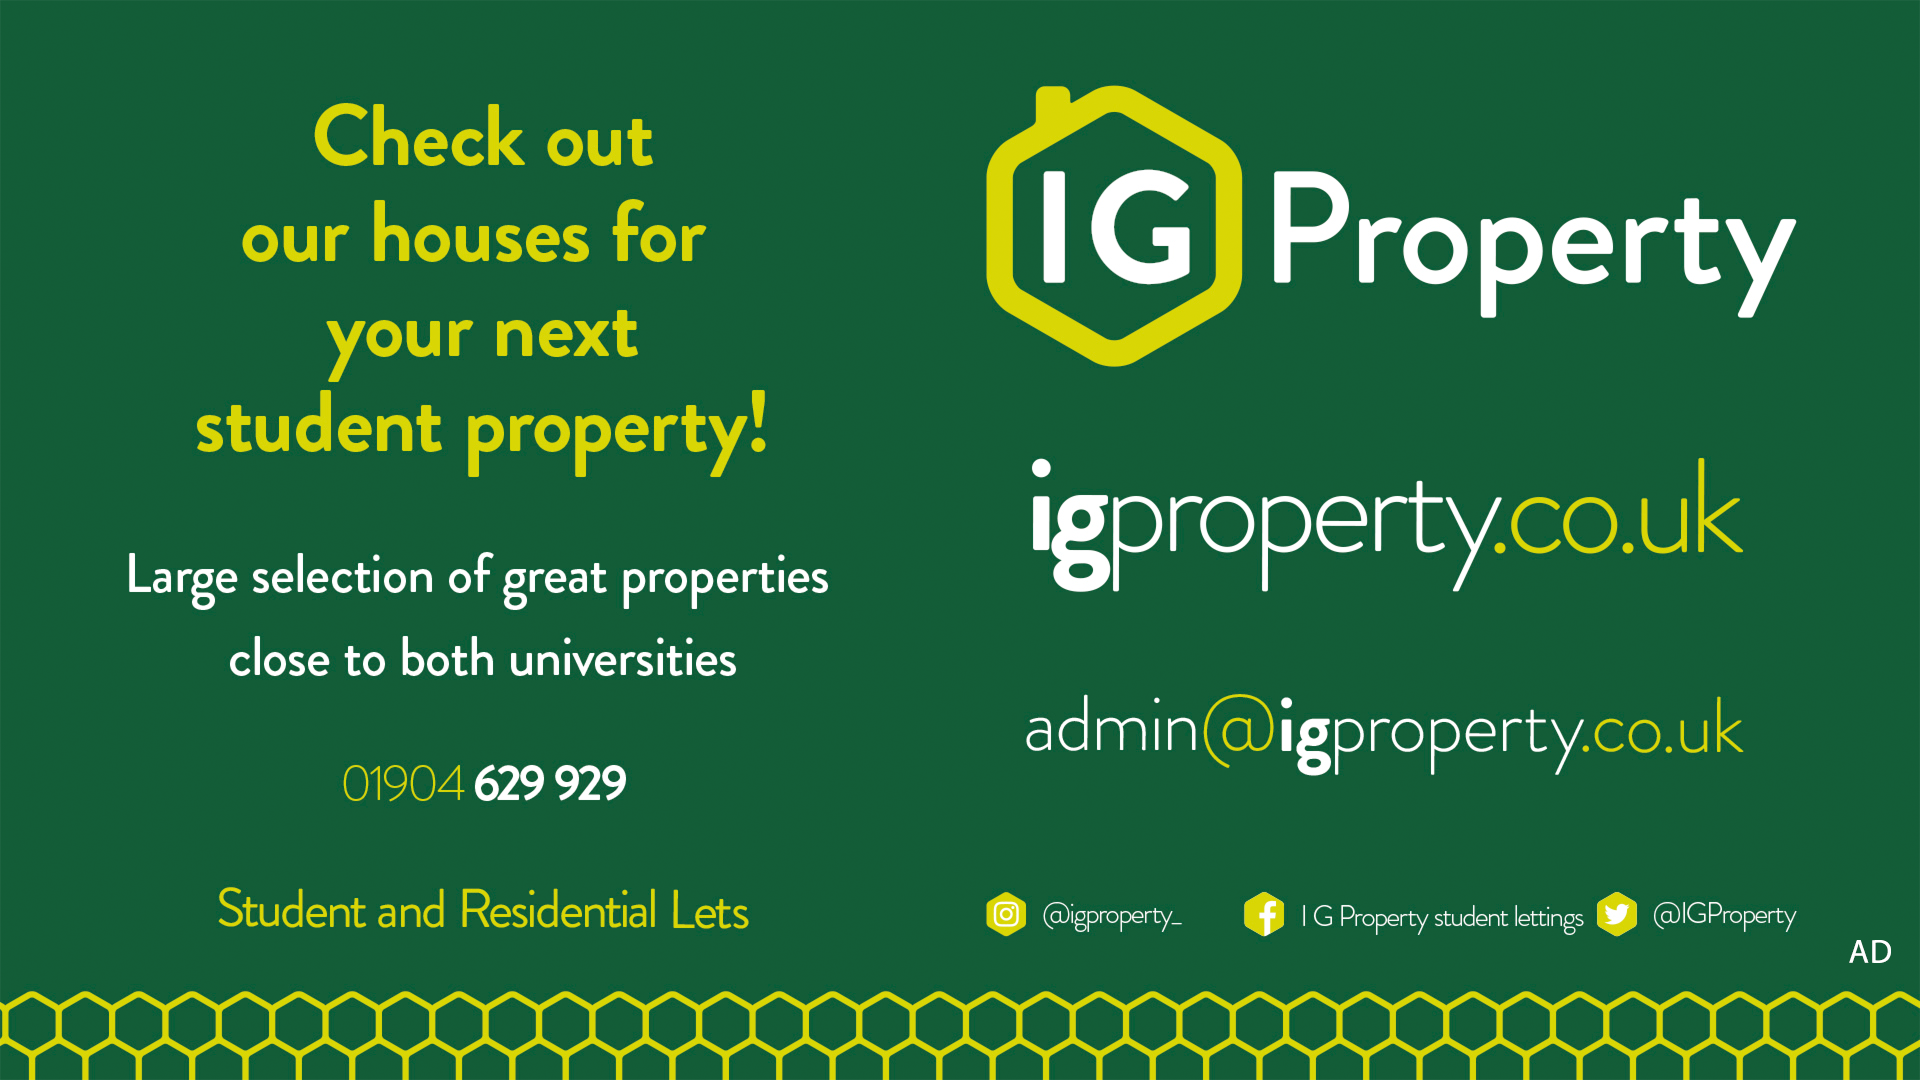 IG Property